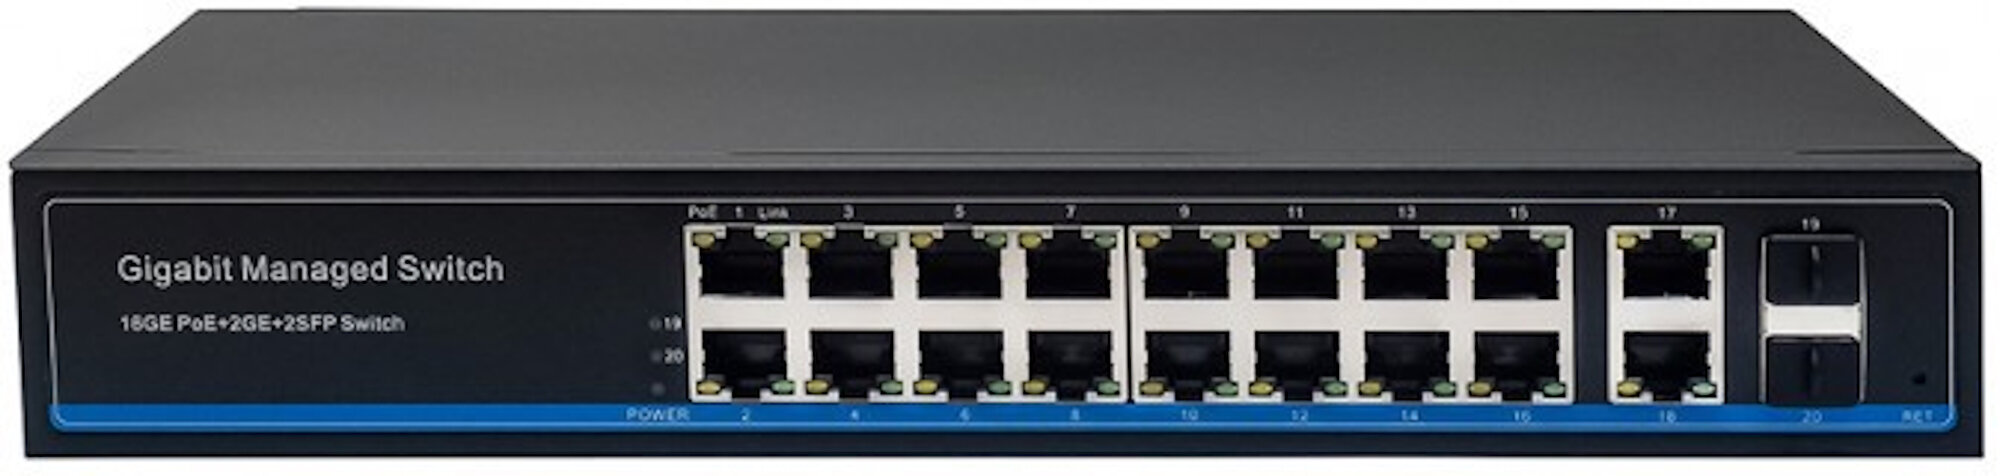 Управляемый L2 PoE коммутатор Gigabit Ethernet на 16 RJ45 PoE + 2 x RJ45 + 2 GE SFP портов. Порты: 16 x GE (10/100/1000 Base-T) с поддержкой PoE (IEEE